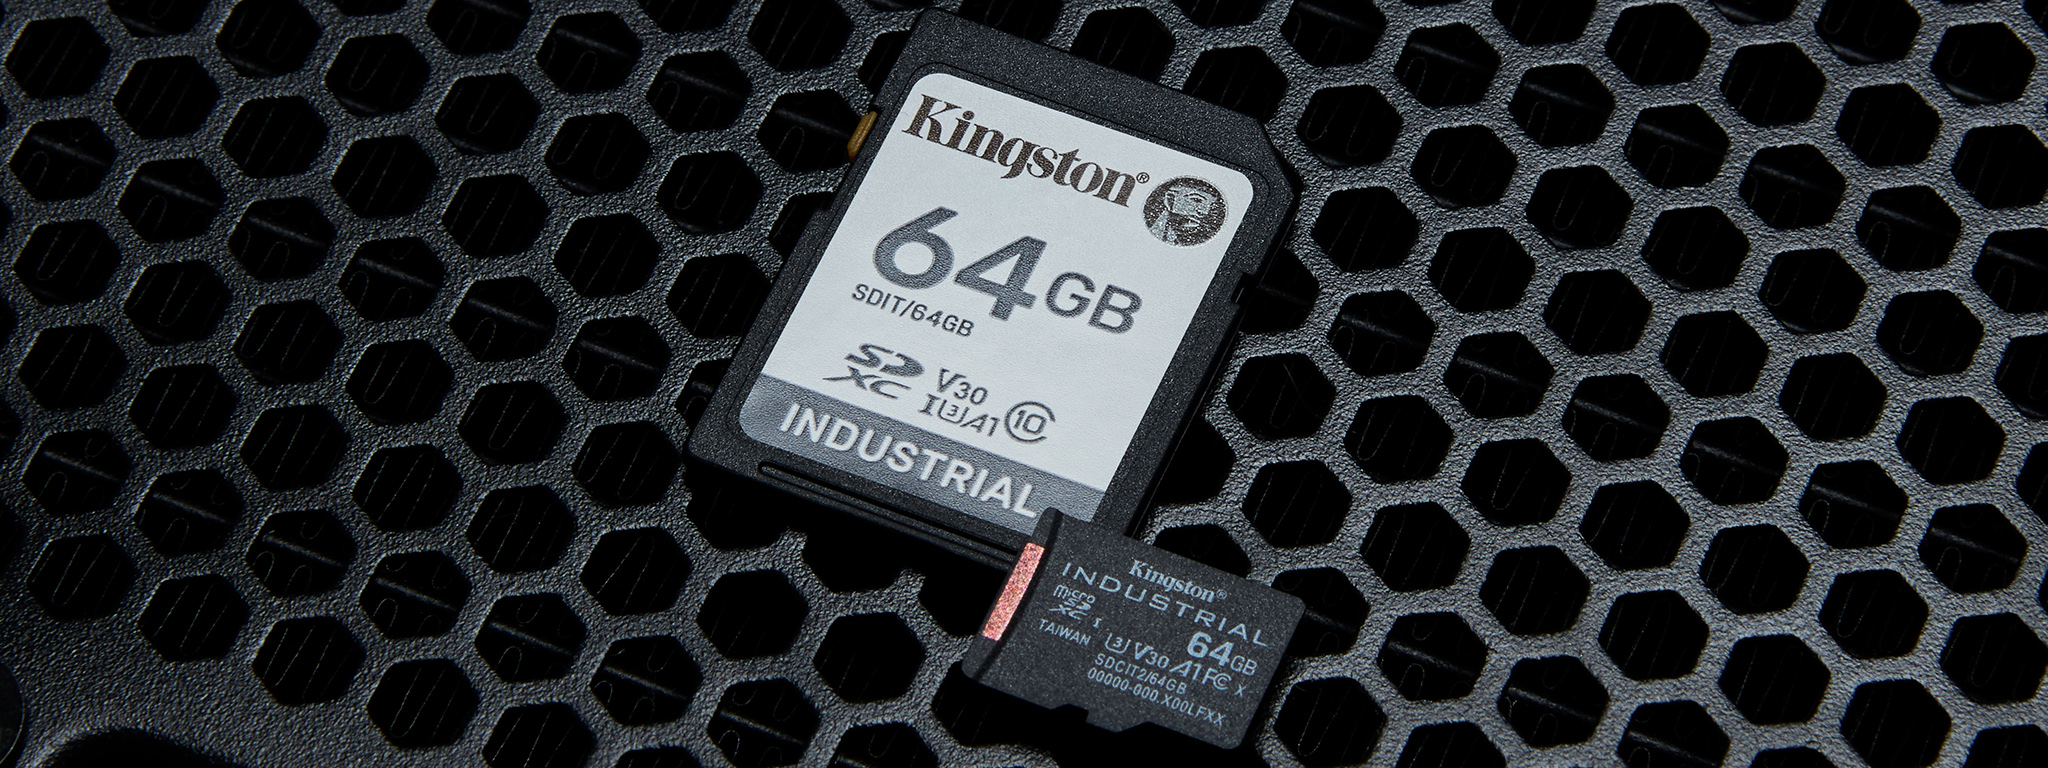 kart microSD Kingston Industrial 64GB leżących na zniszczonej metalowej powierzchni